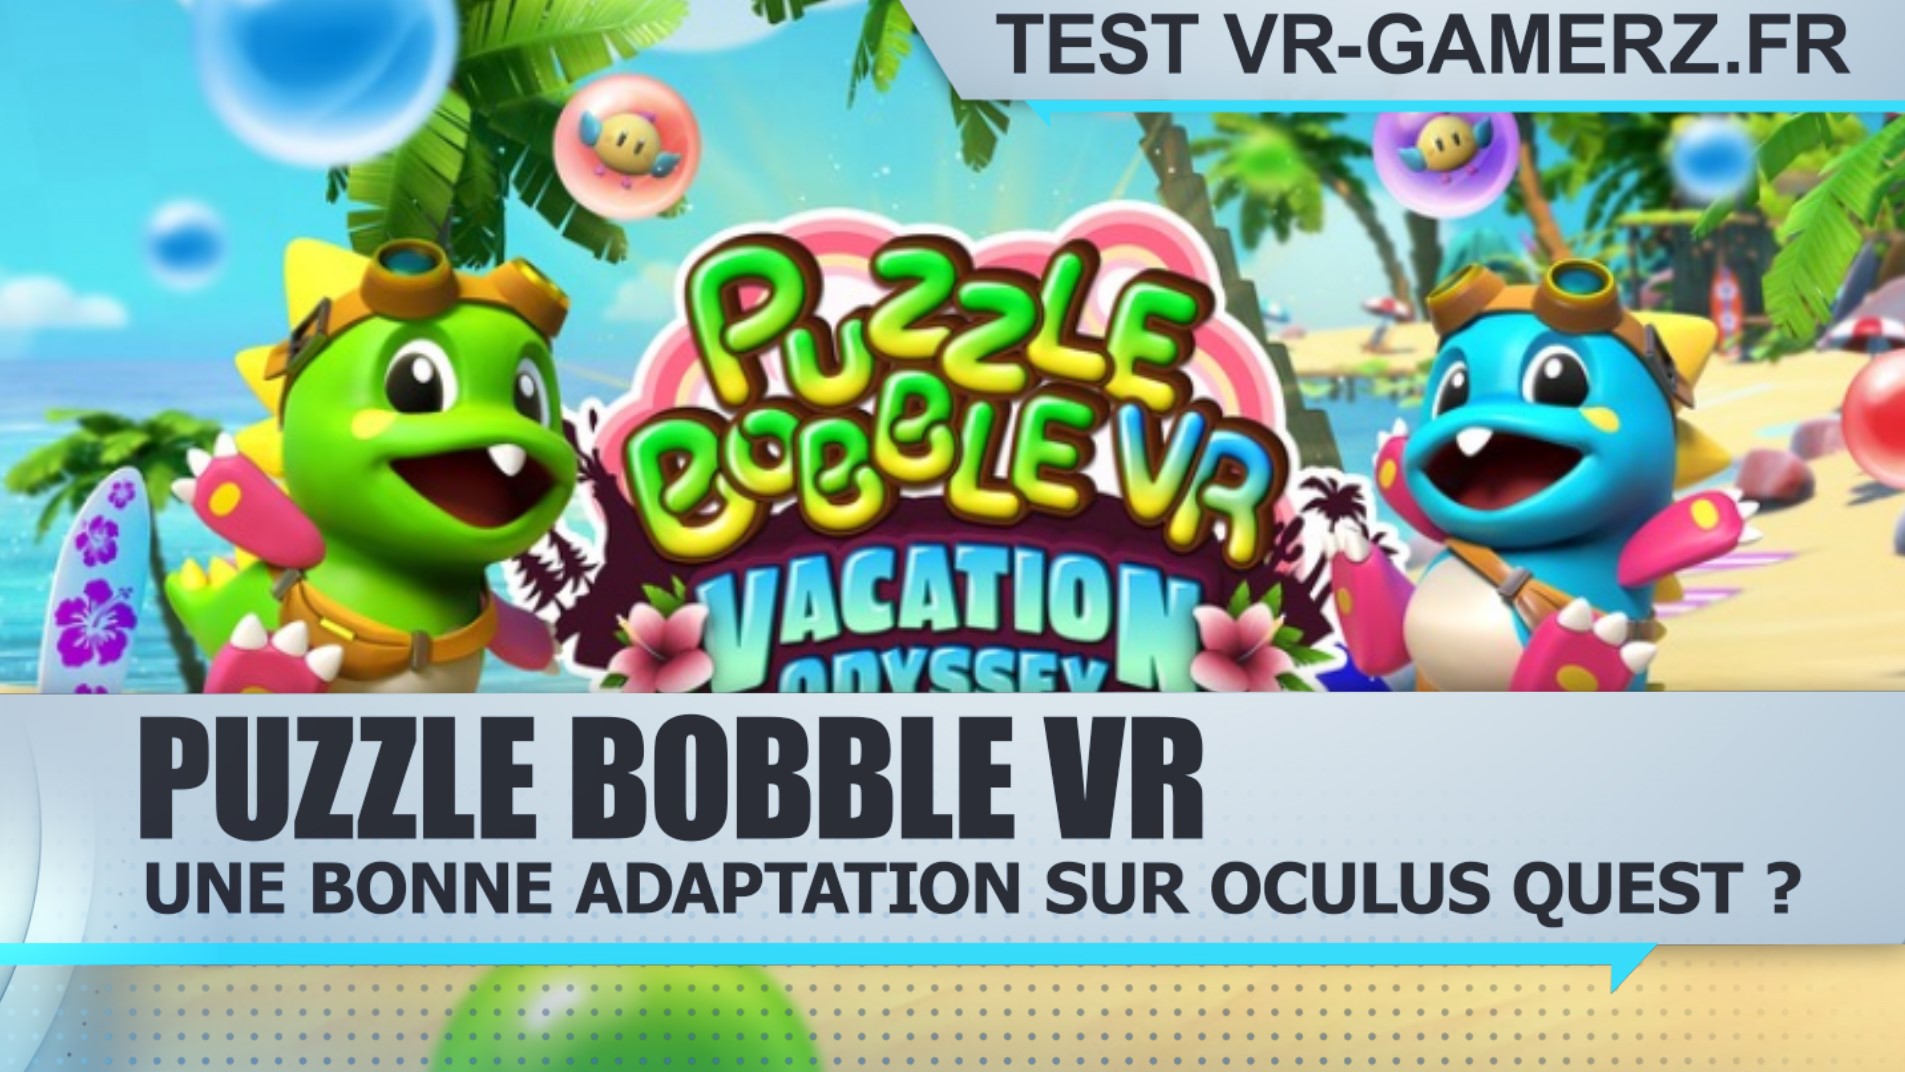 Test Puzzle Bobble VR Oculus quest : Une bonne adaptation en VR ?